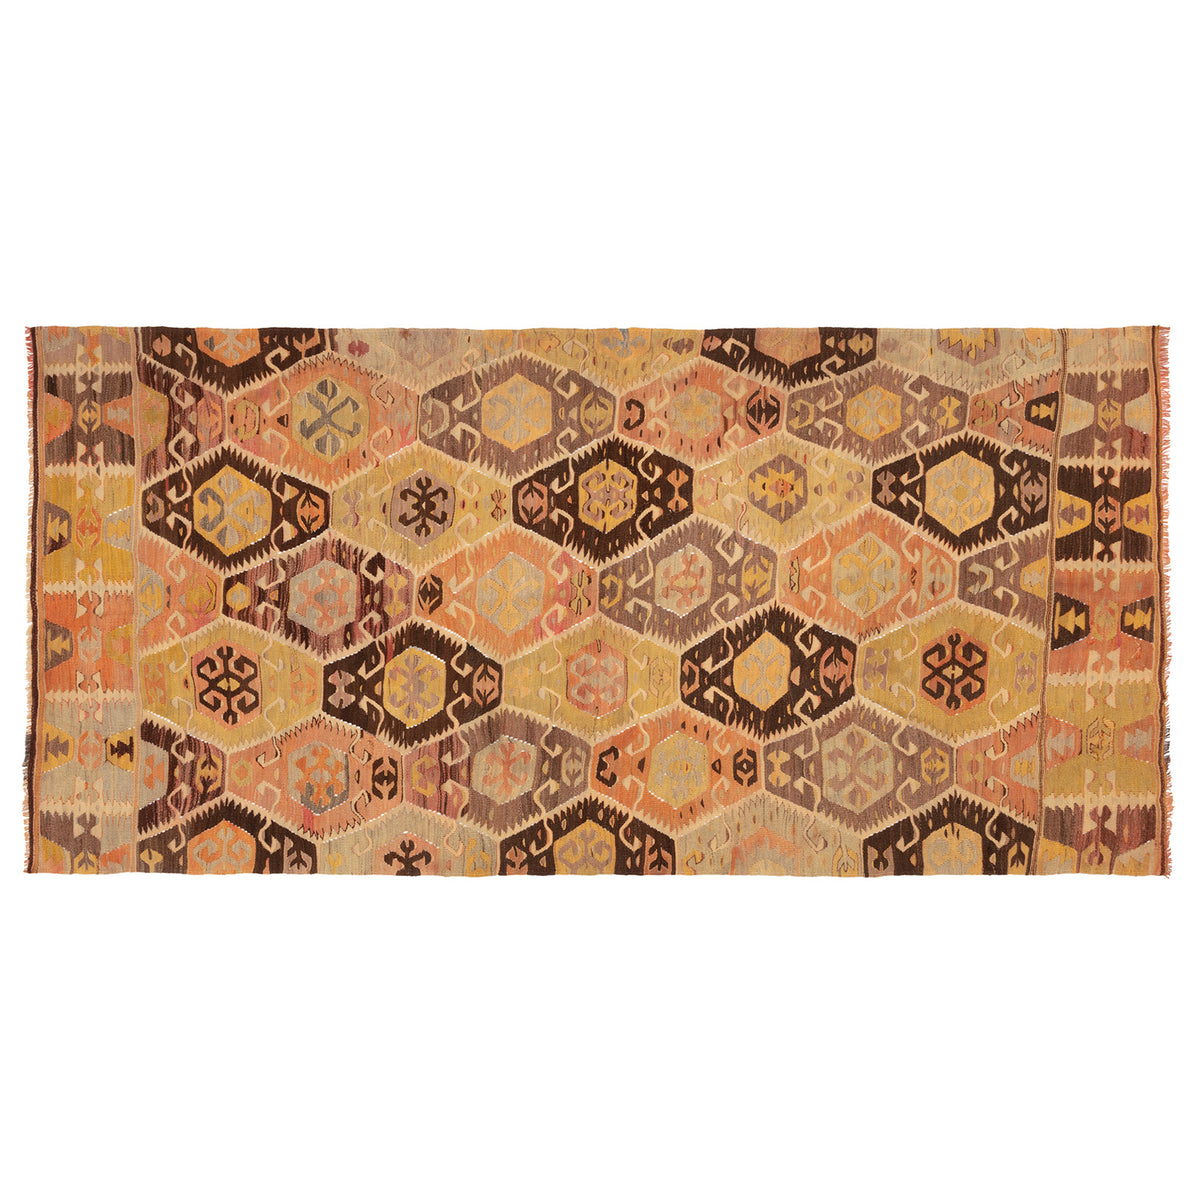 Old Kilim carpet no. K697 · 370 x 137 cm, size